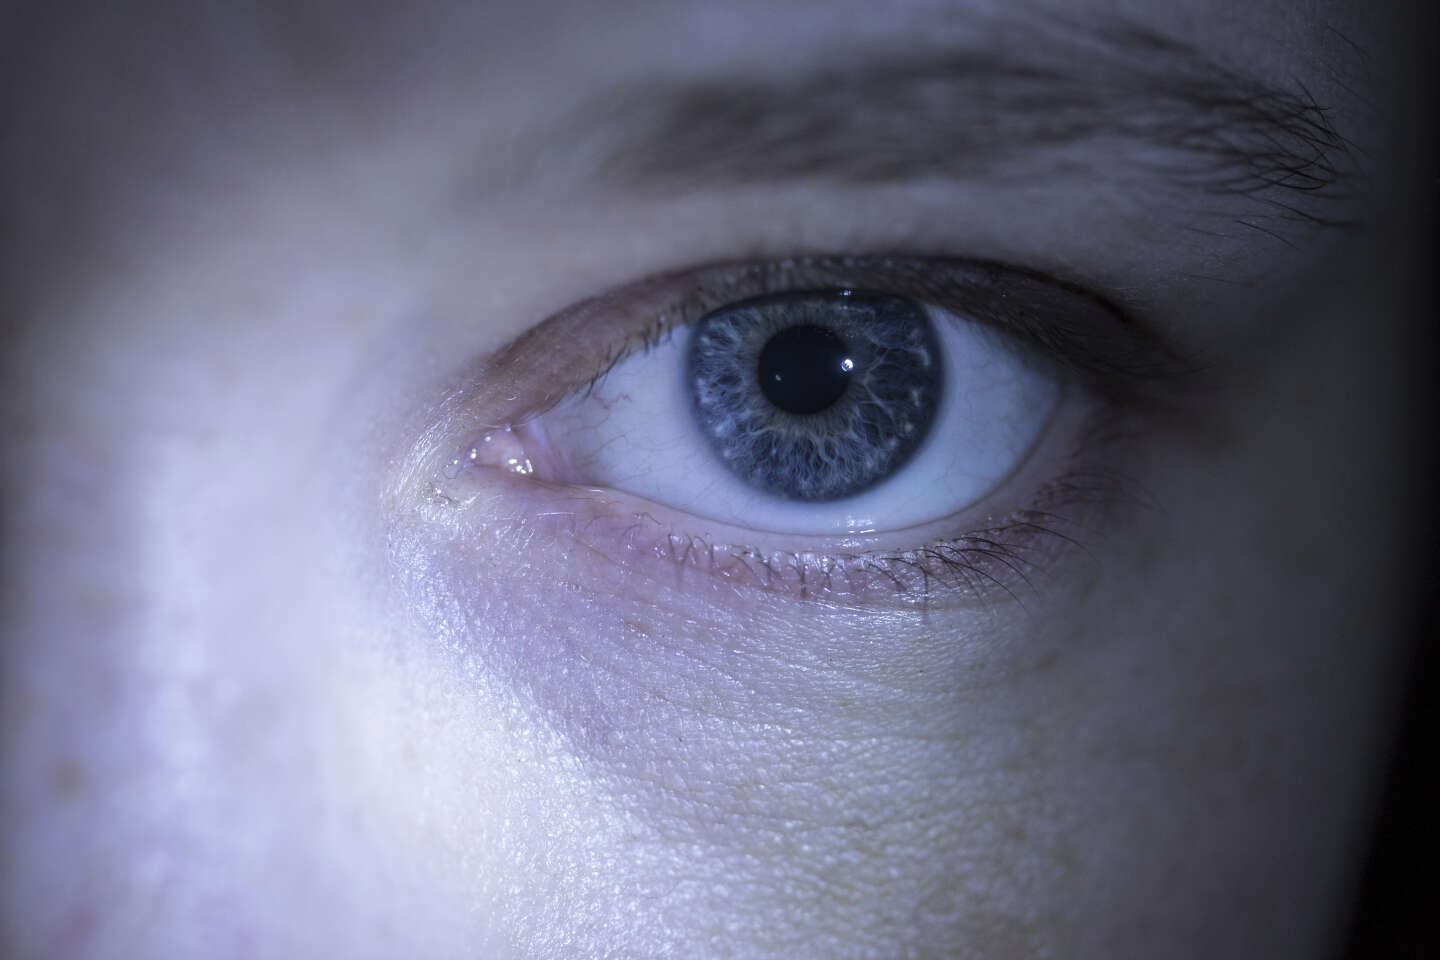 La pupilla sarà un’indicazione dell’effetto dell’attività fisica sul cervello